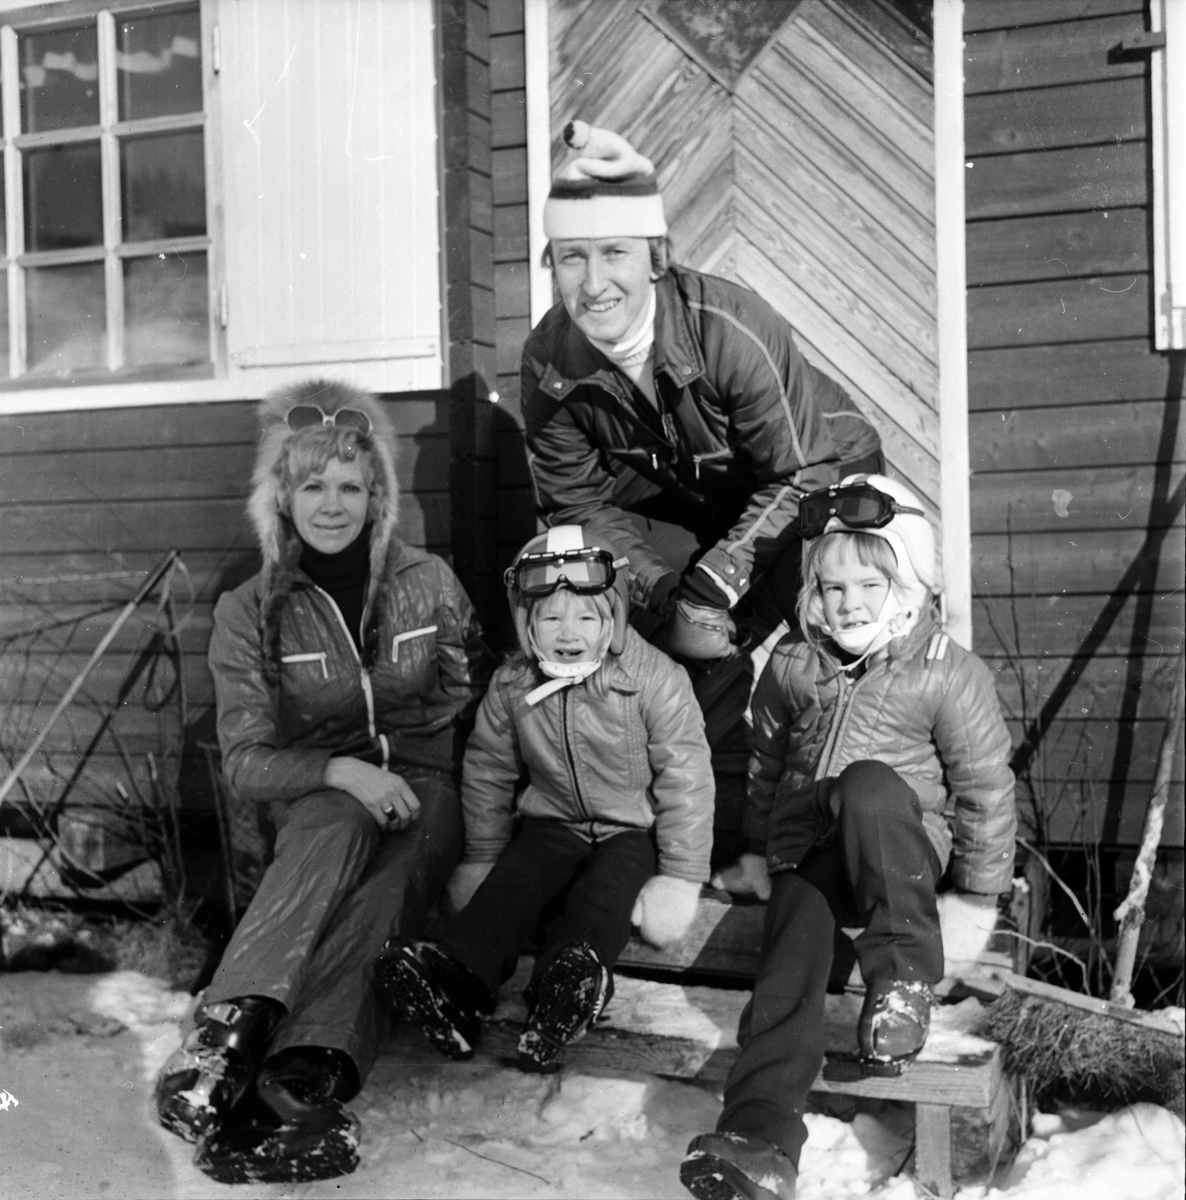 Familj i Koldemobacken. Bollnäs
Februari 1973